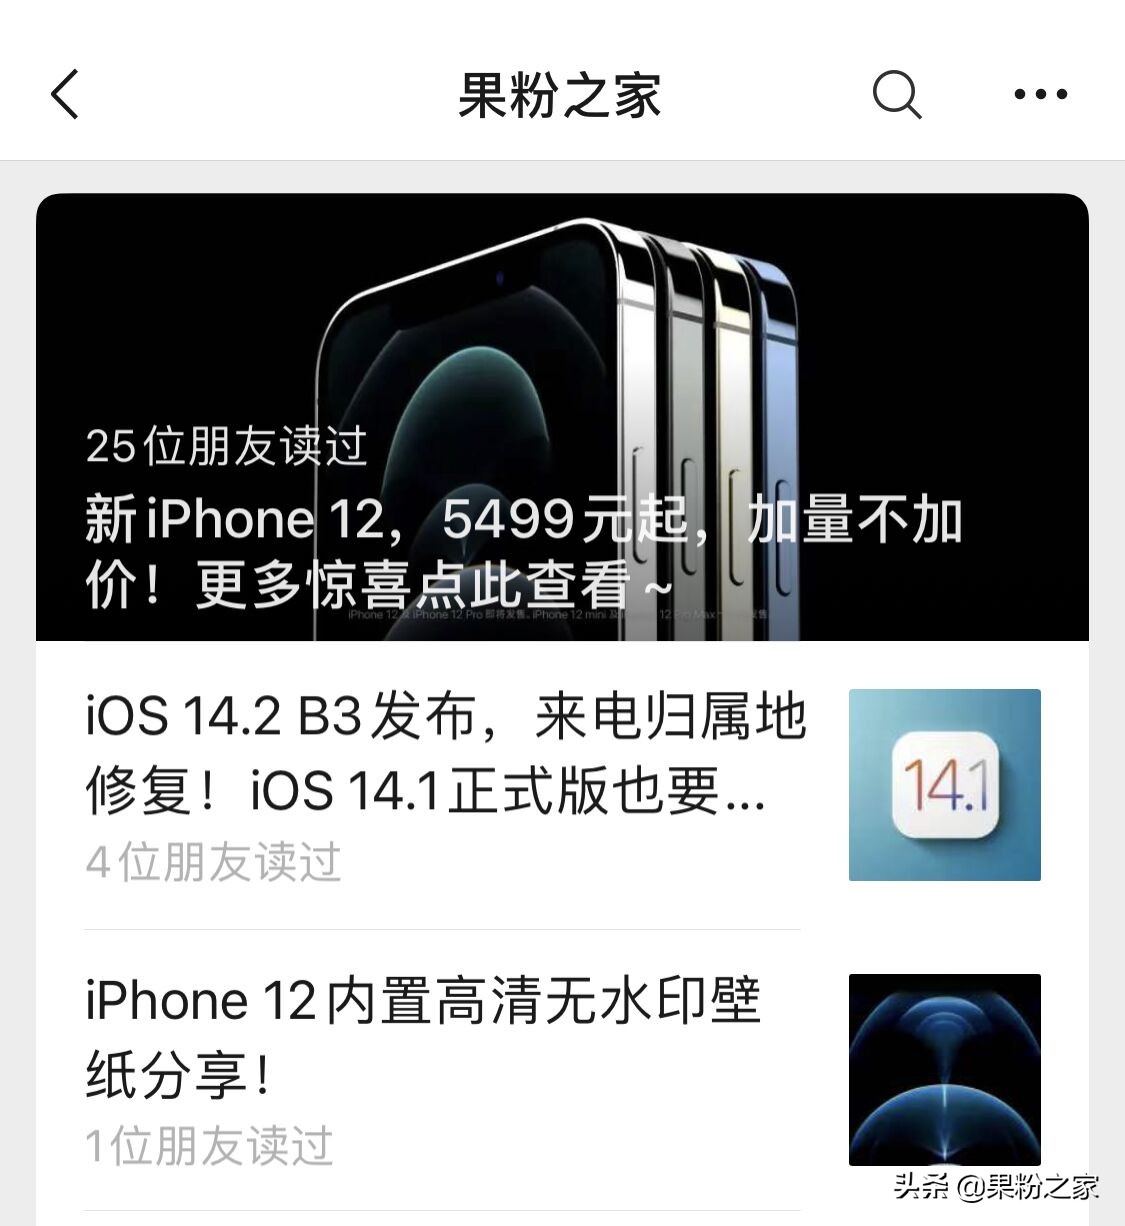 新iPhone 双卡双待方式下暂不兼容5G